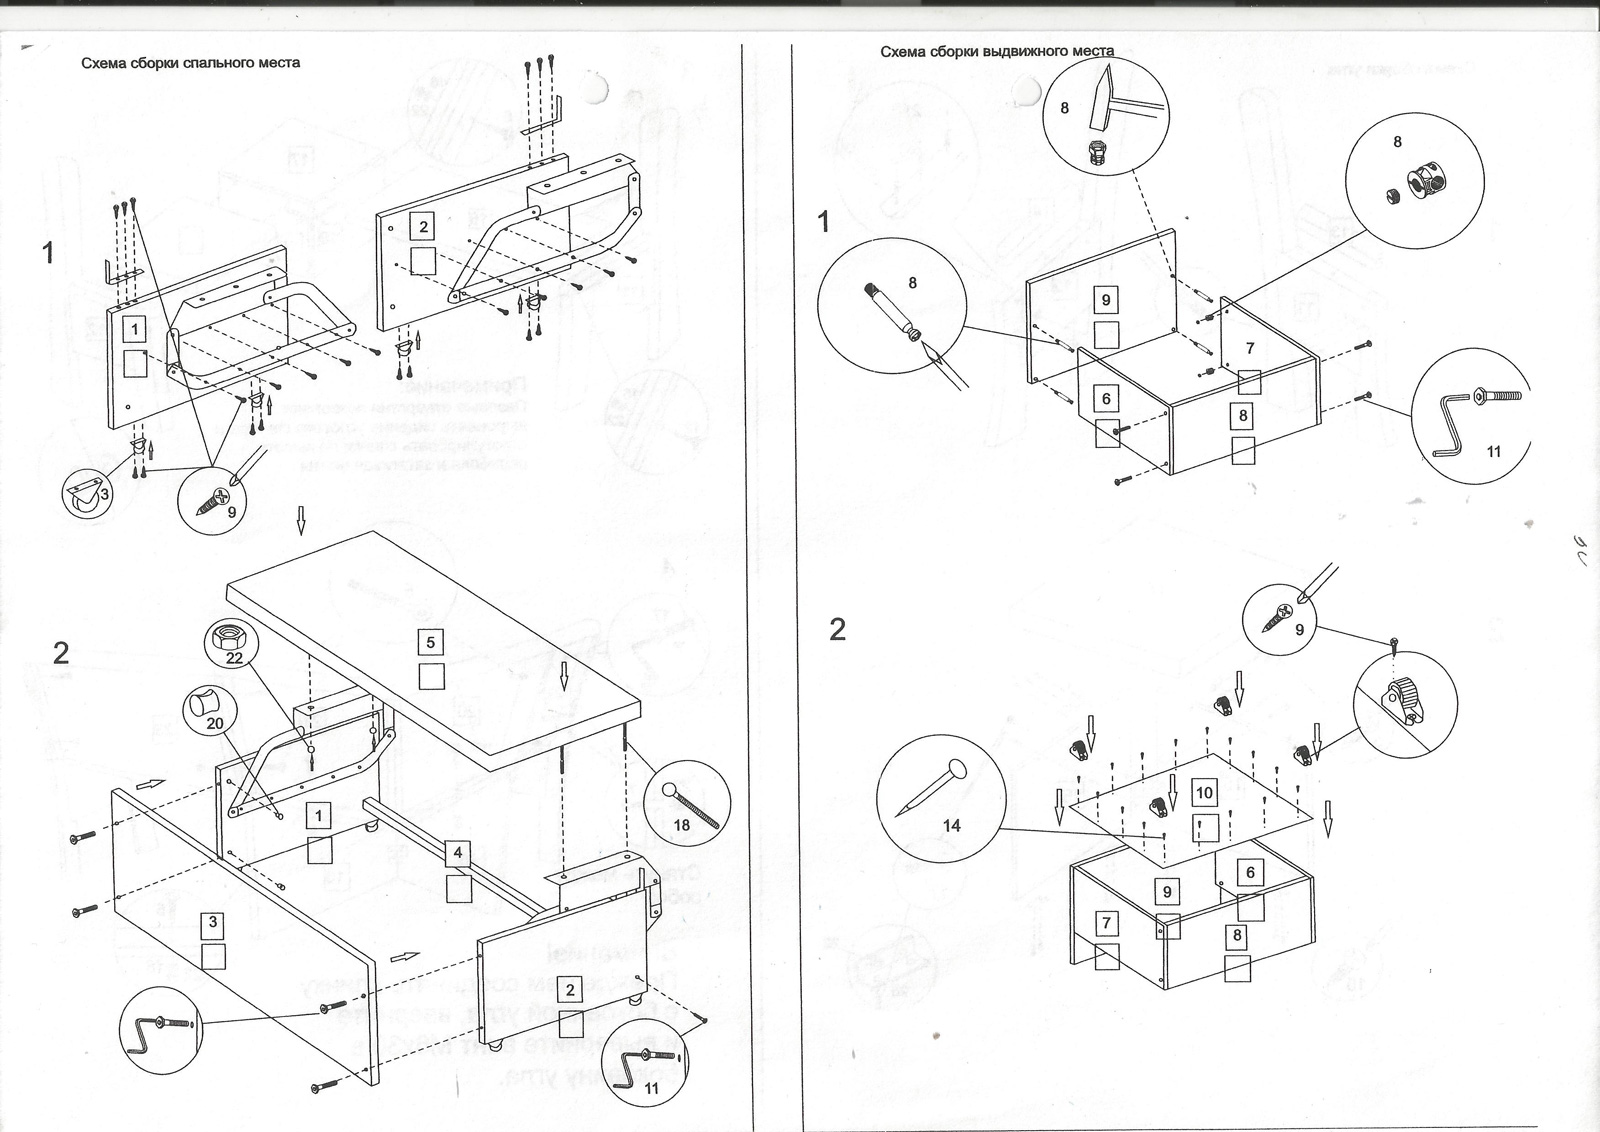 создание инструкции по сборке мебели